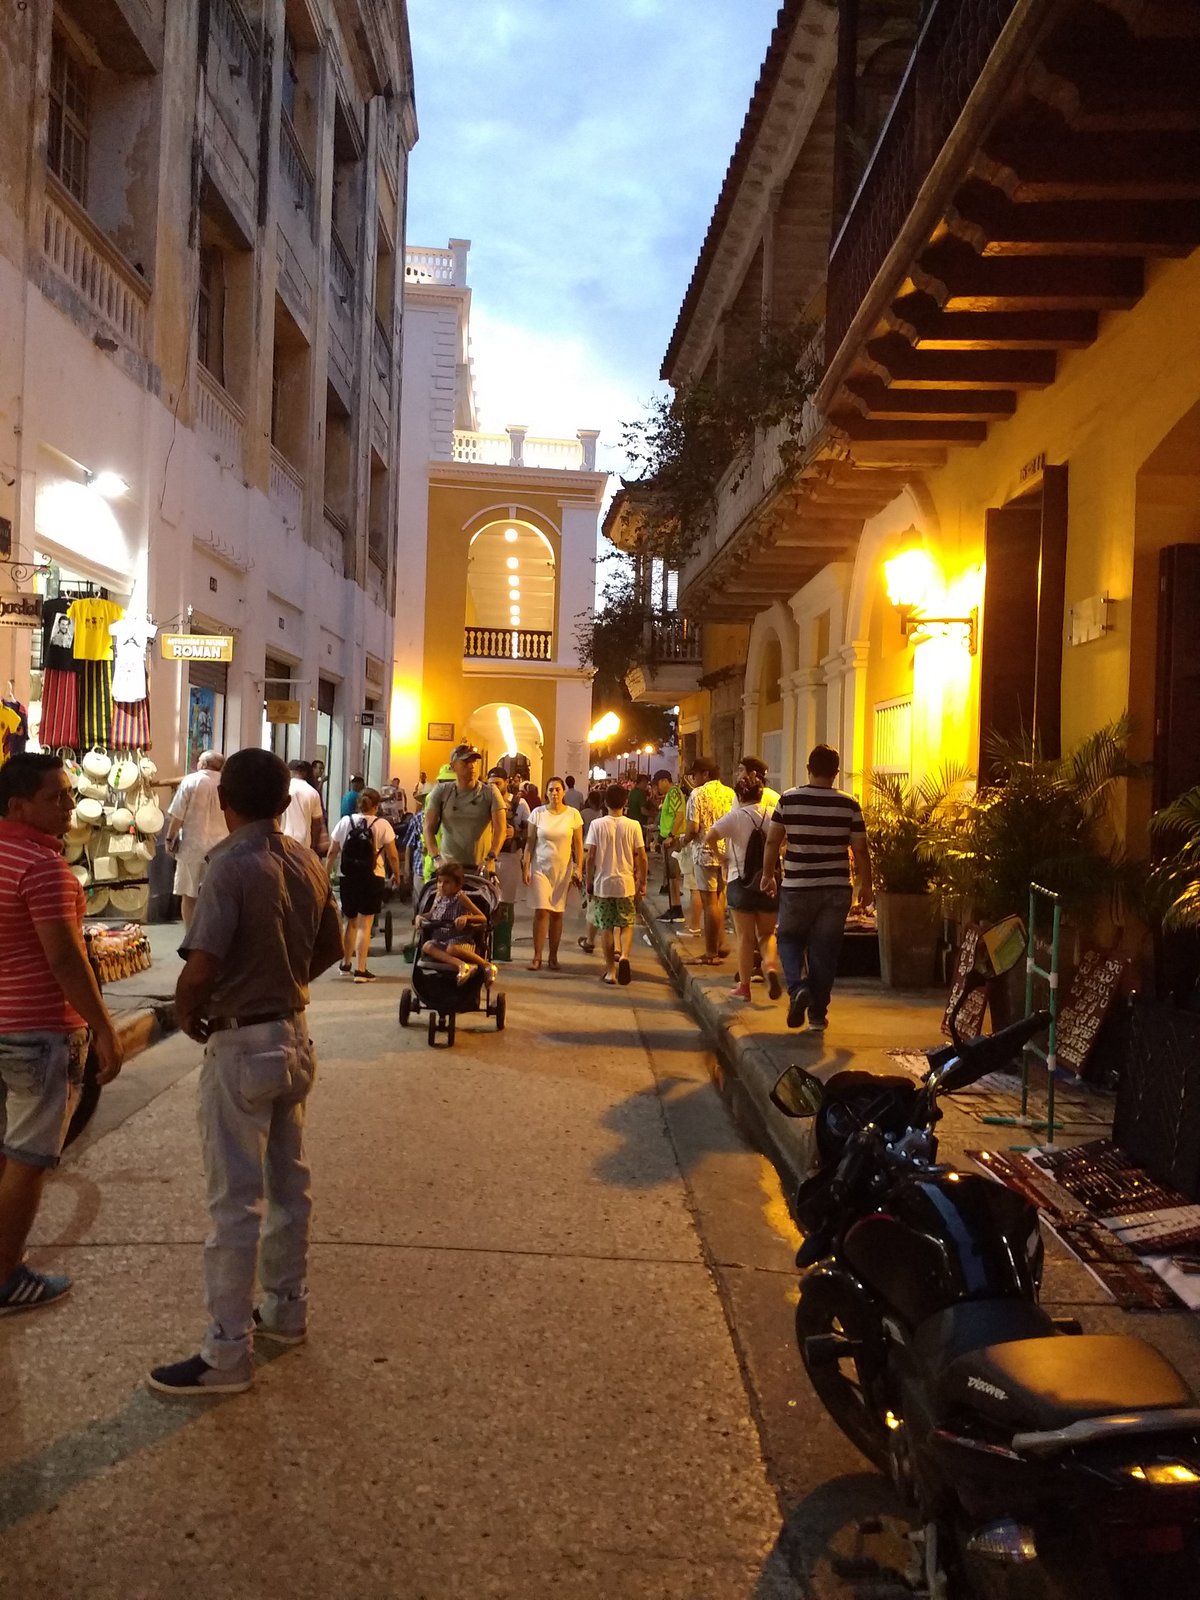 Plaza de Toros Cartagena de Indias - All You Need to Know BEFORE You Go